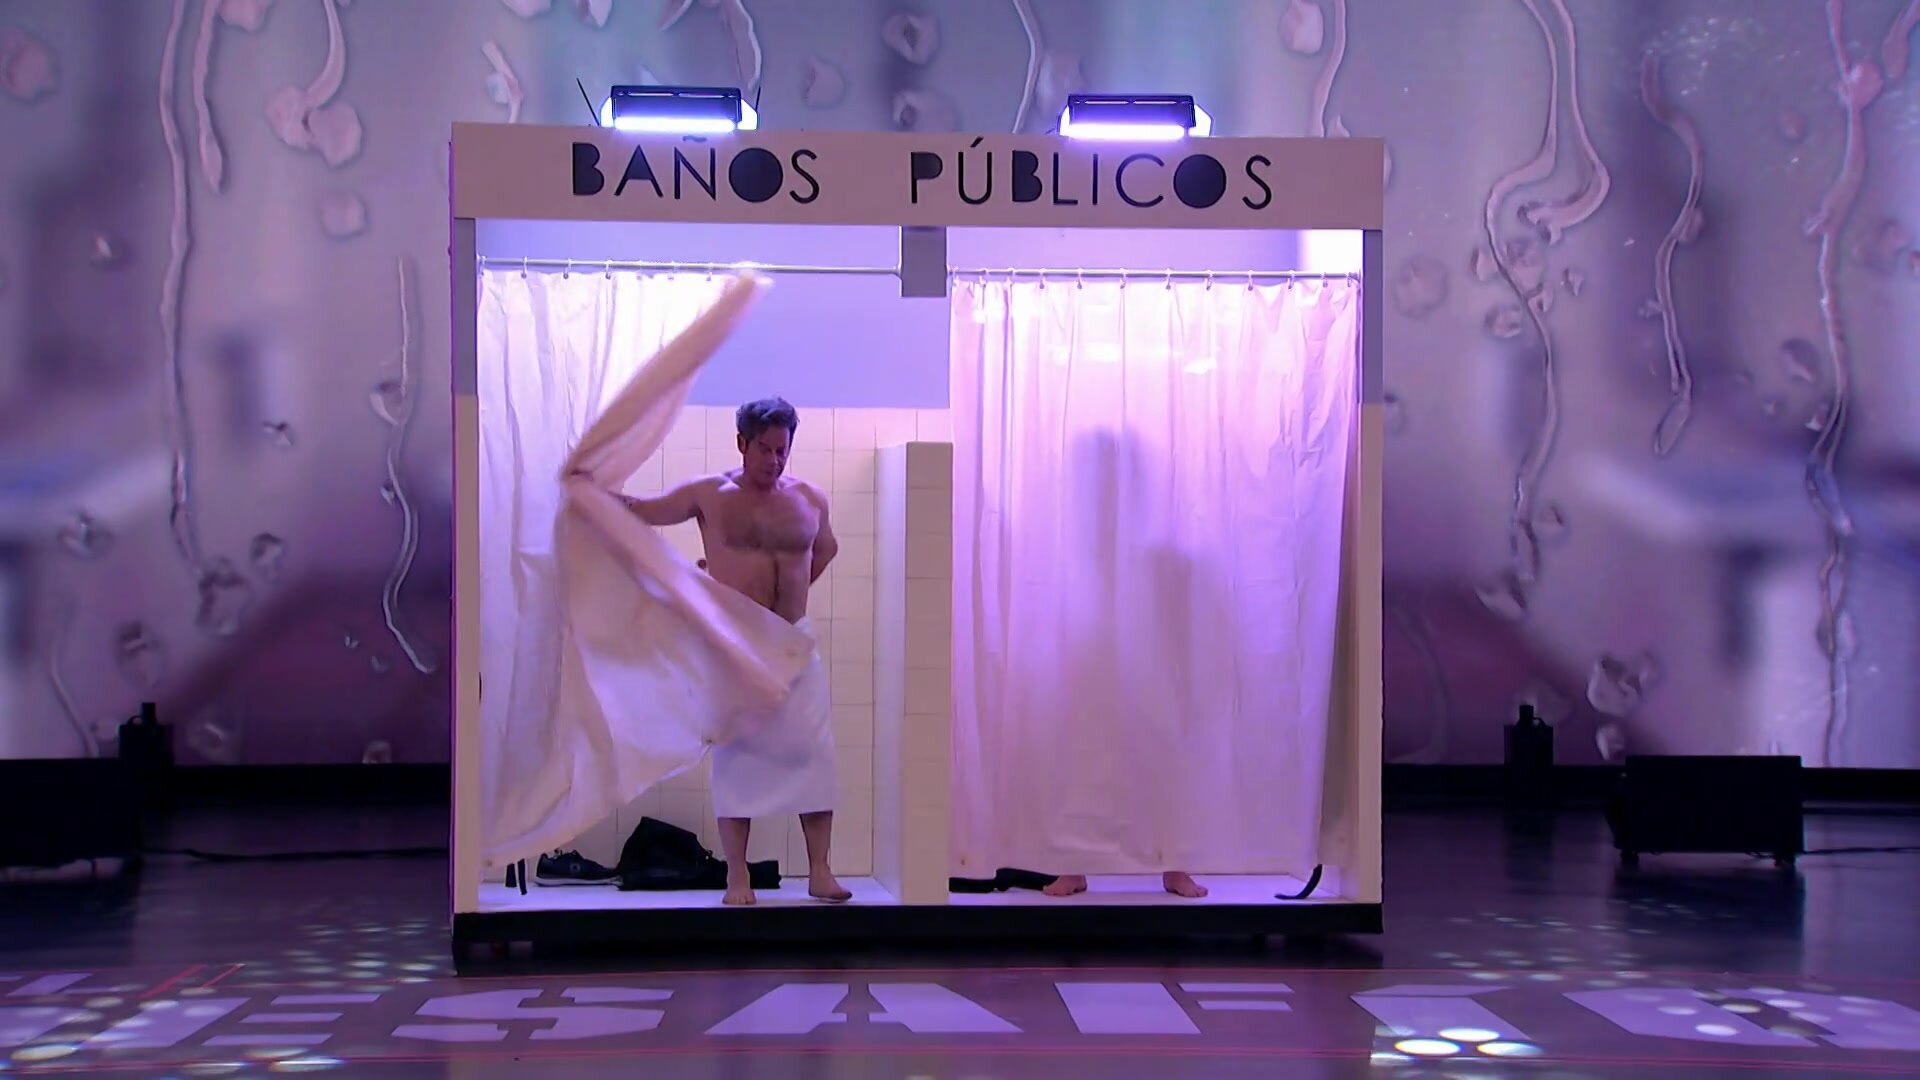 Jorge Sanz Pablo Pujol Spanish actors frontal towels